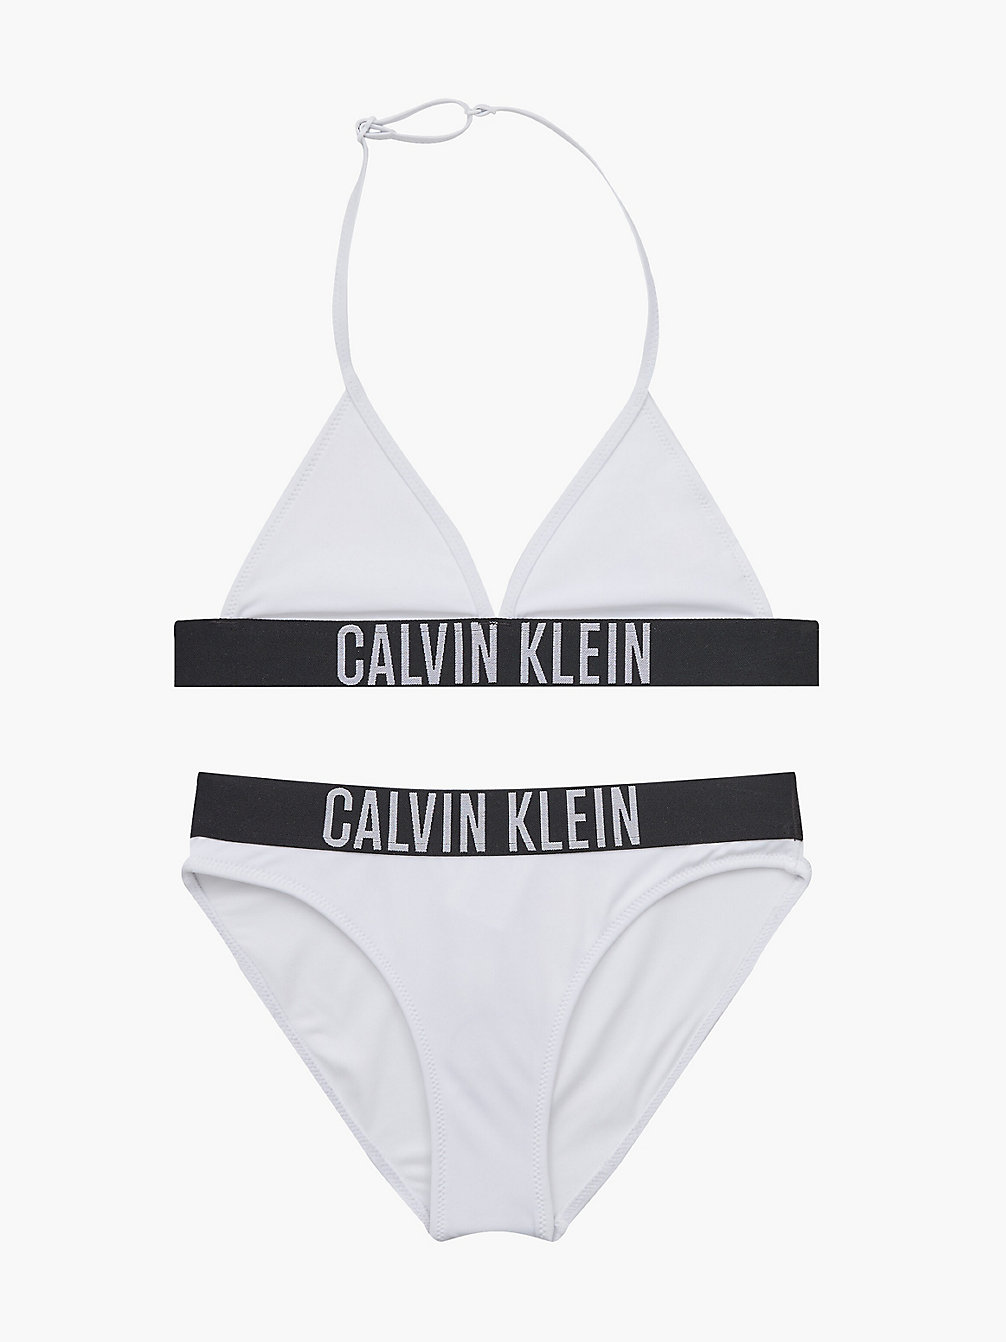 PVH CLASSIC WHITE > Triangel-Bikini-Set Für Mädchen - Intense Power > undefined girls - Calvin Klein